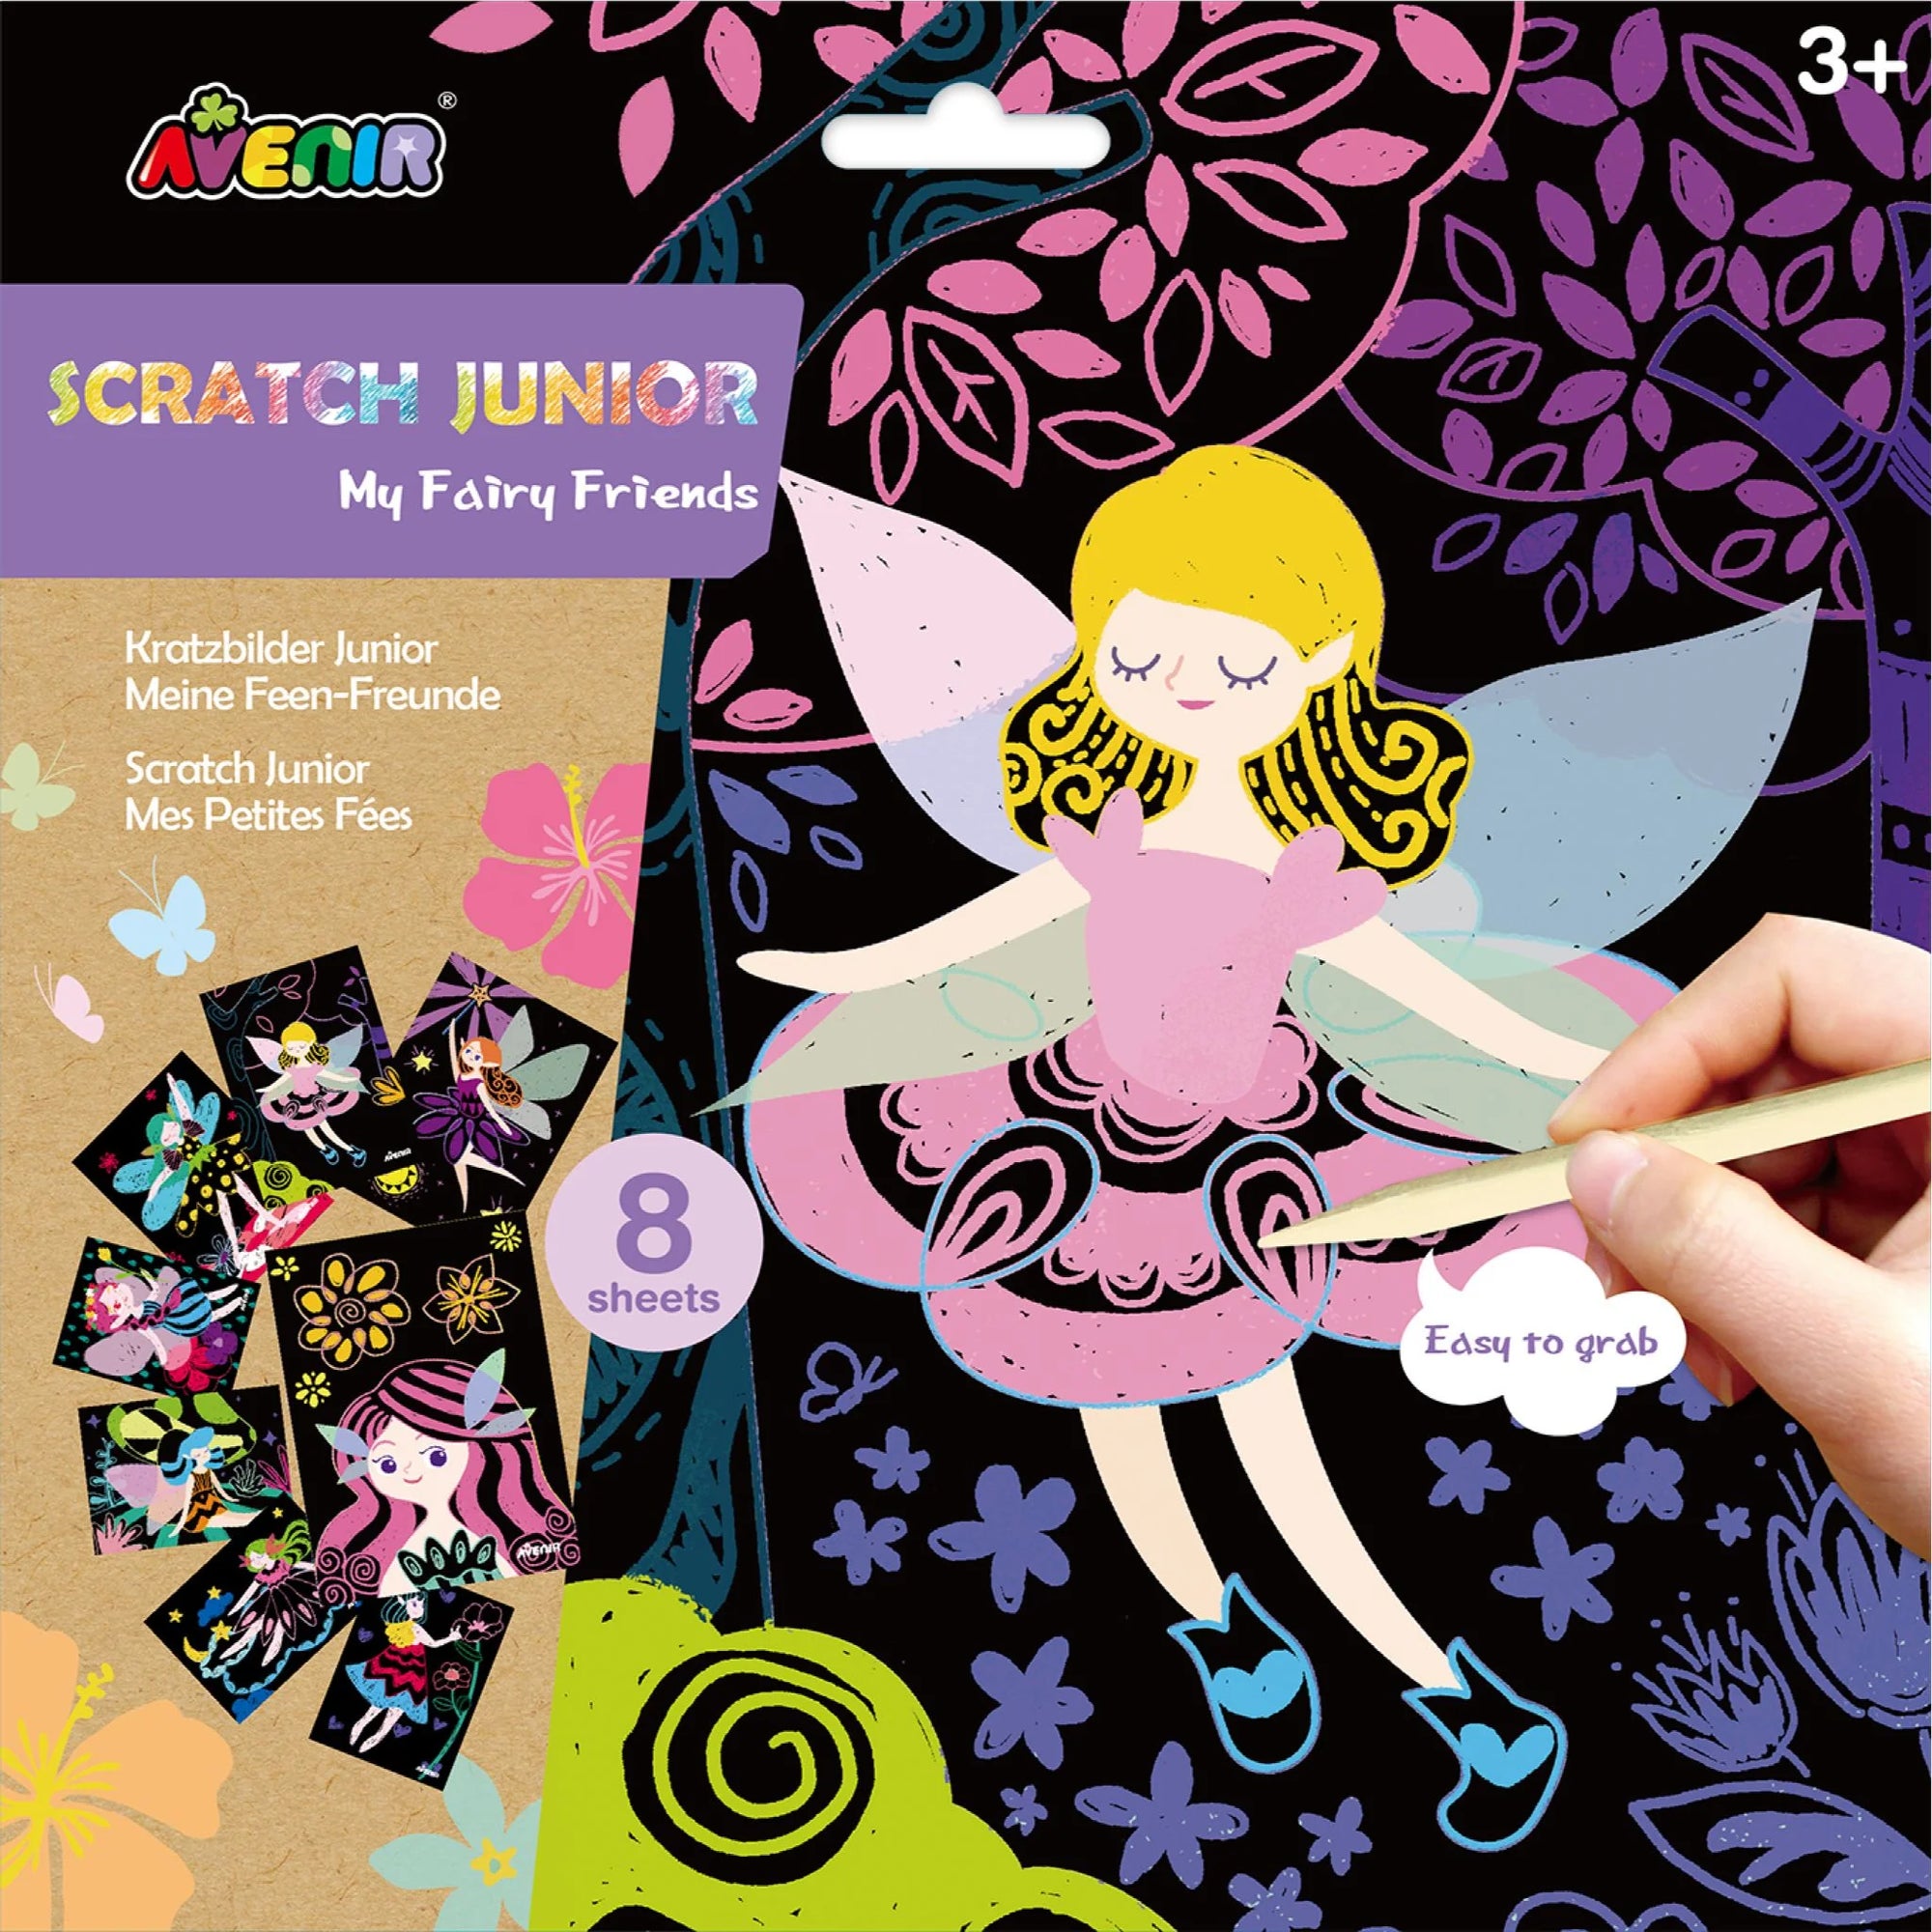 Avenir Scratch Junior - My Fairy Friends